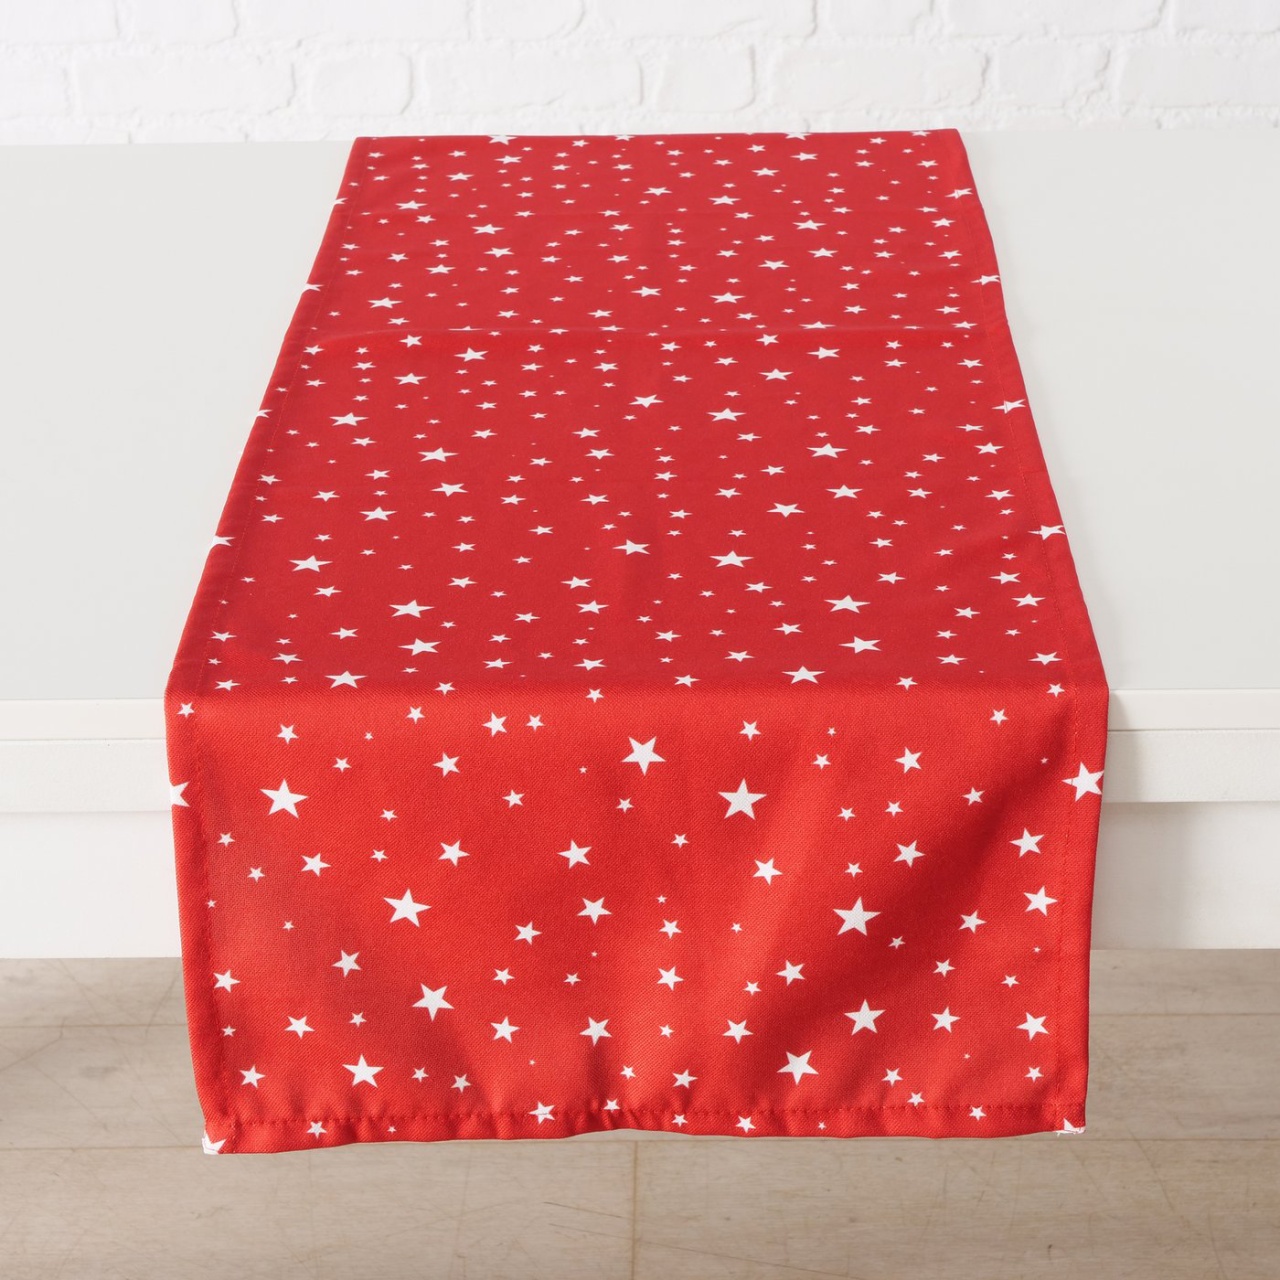 Tischläufer Weihnachten rot mit weißen Sternen L 143 cm